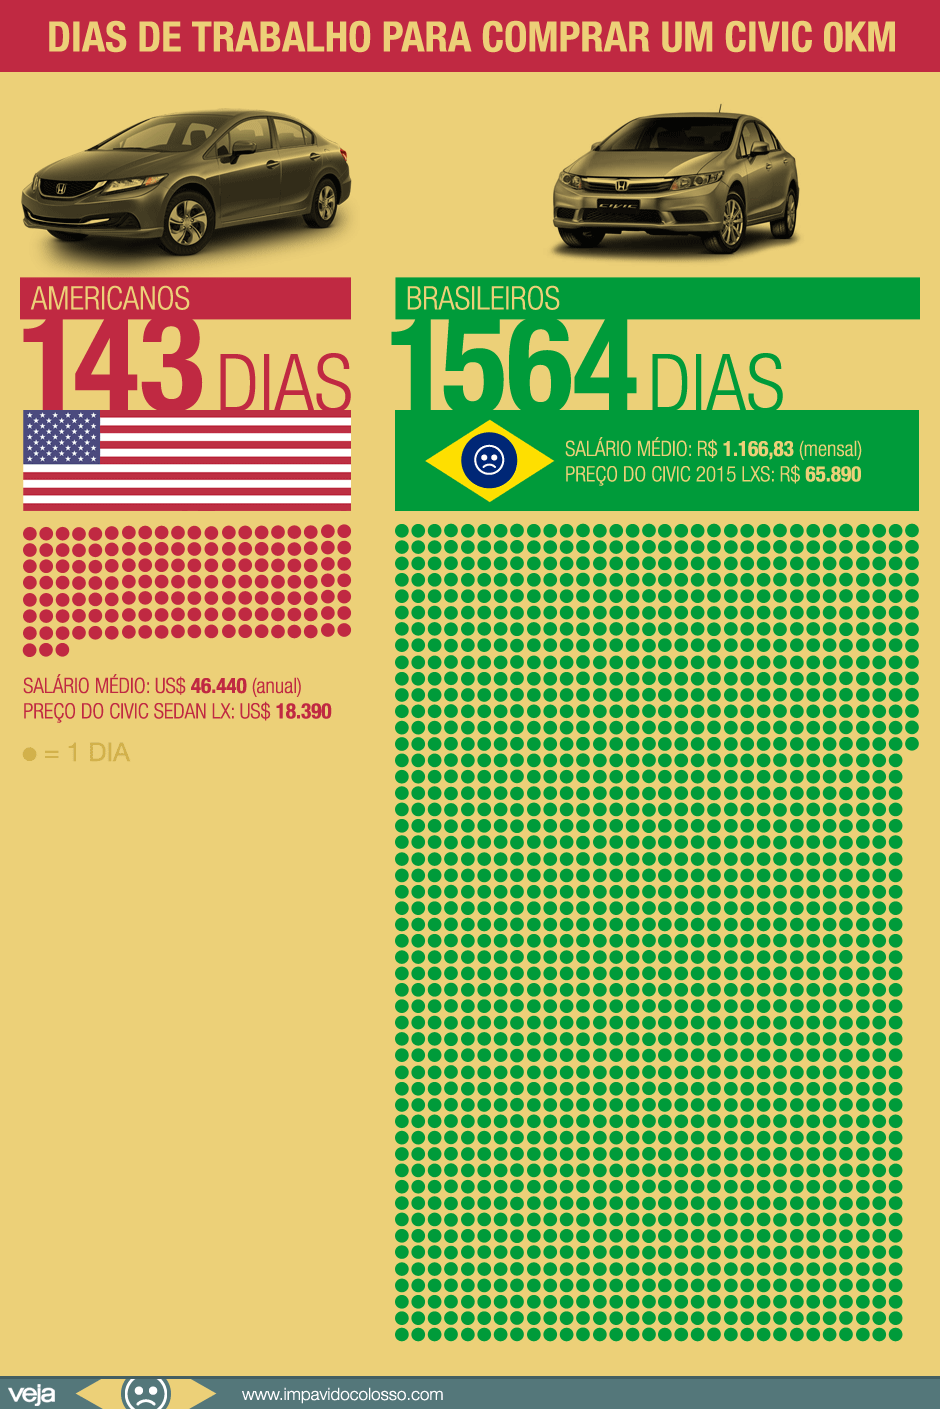 039-brasileiros-trabalham-11-vezes-mais-comprar-honda-civic1